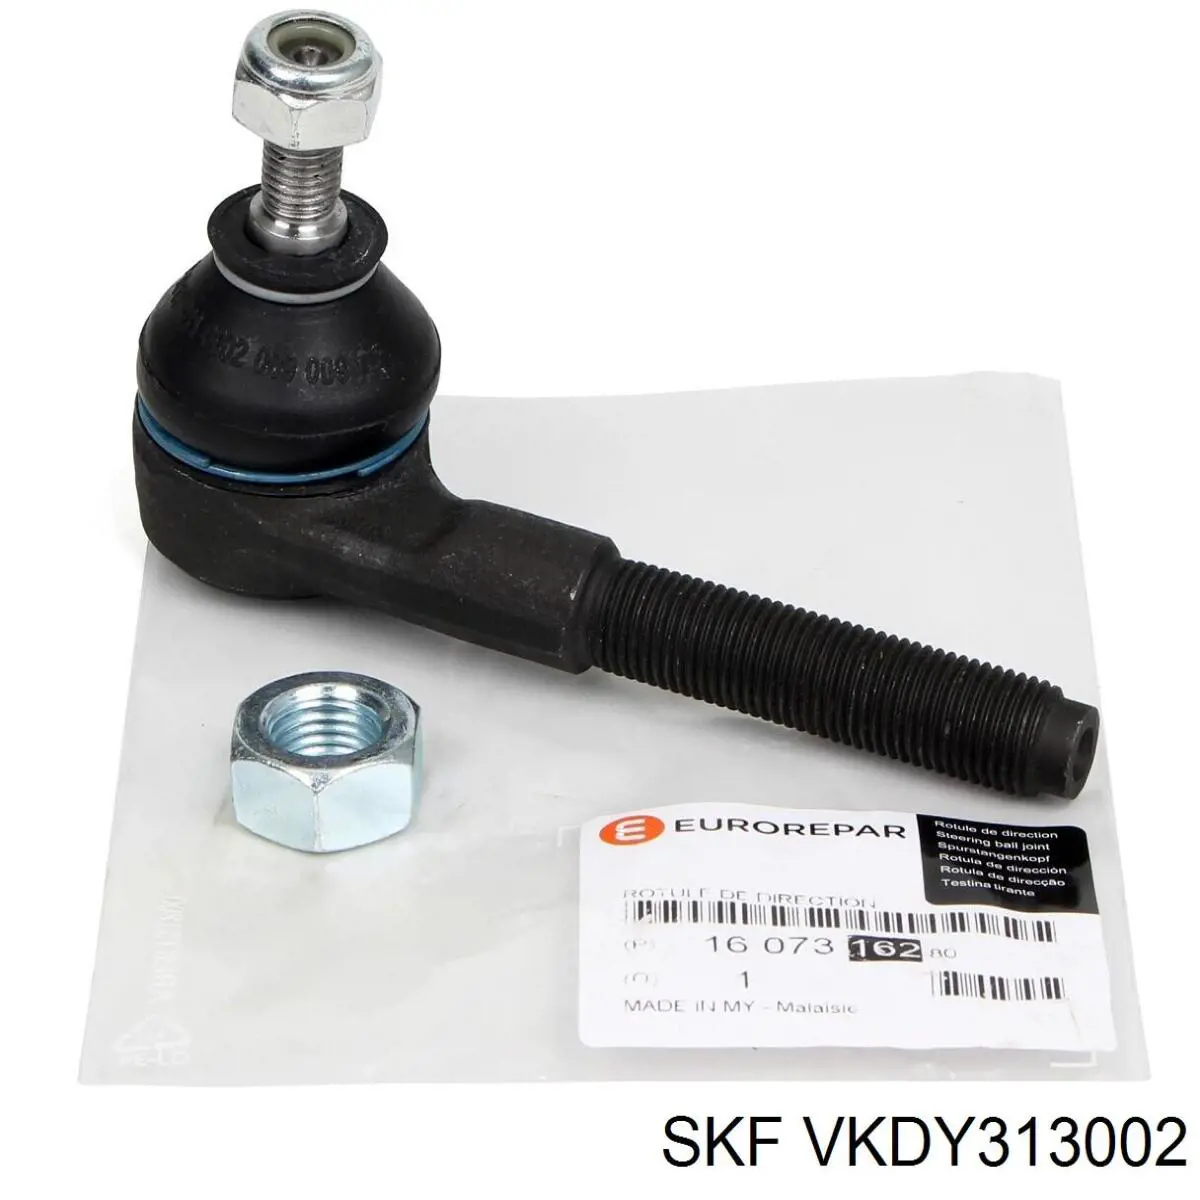 VKDY313002 SKF rótula barra de acoplamiento exterior